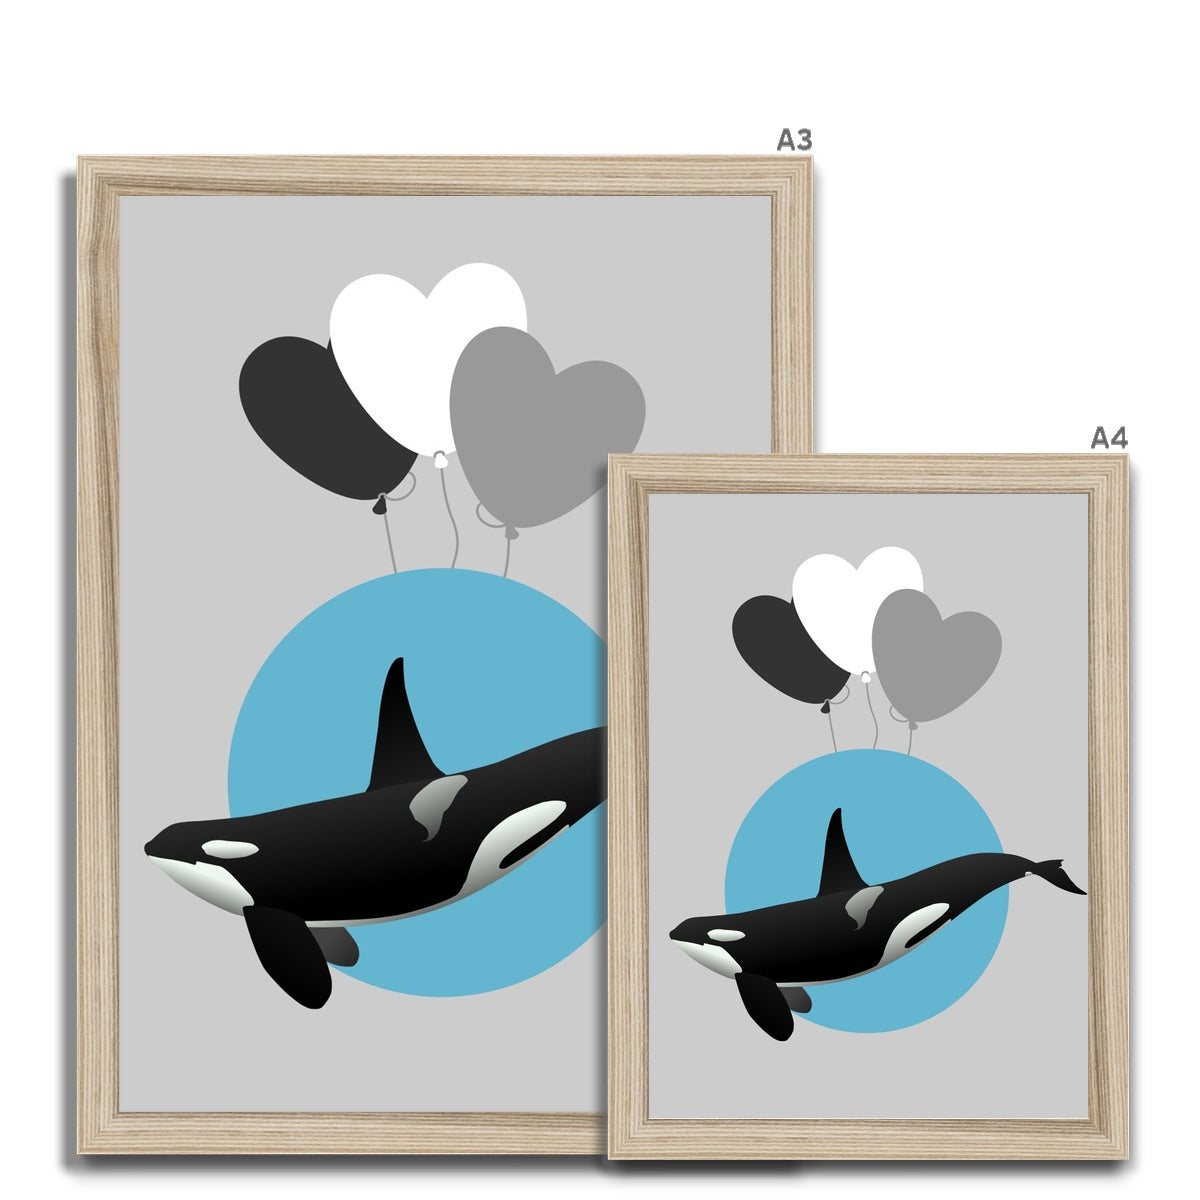 Orca Framed Print